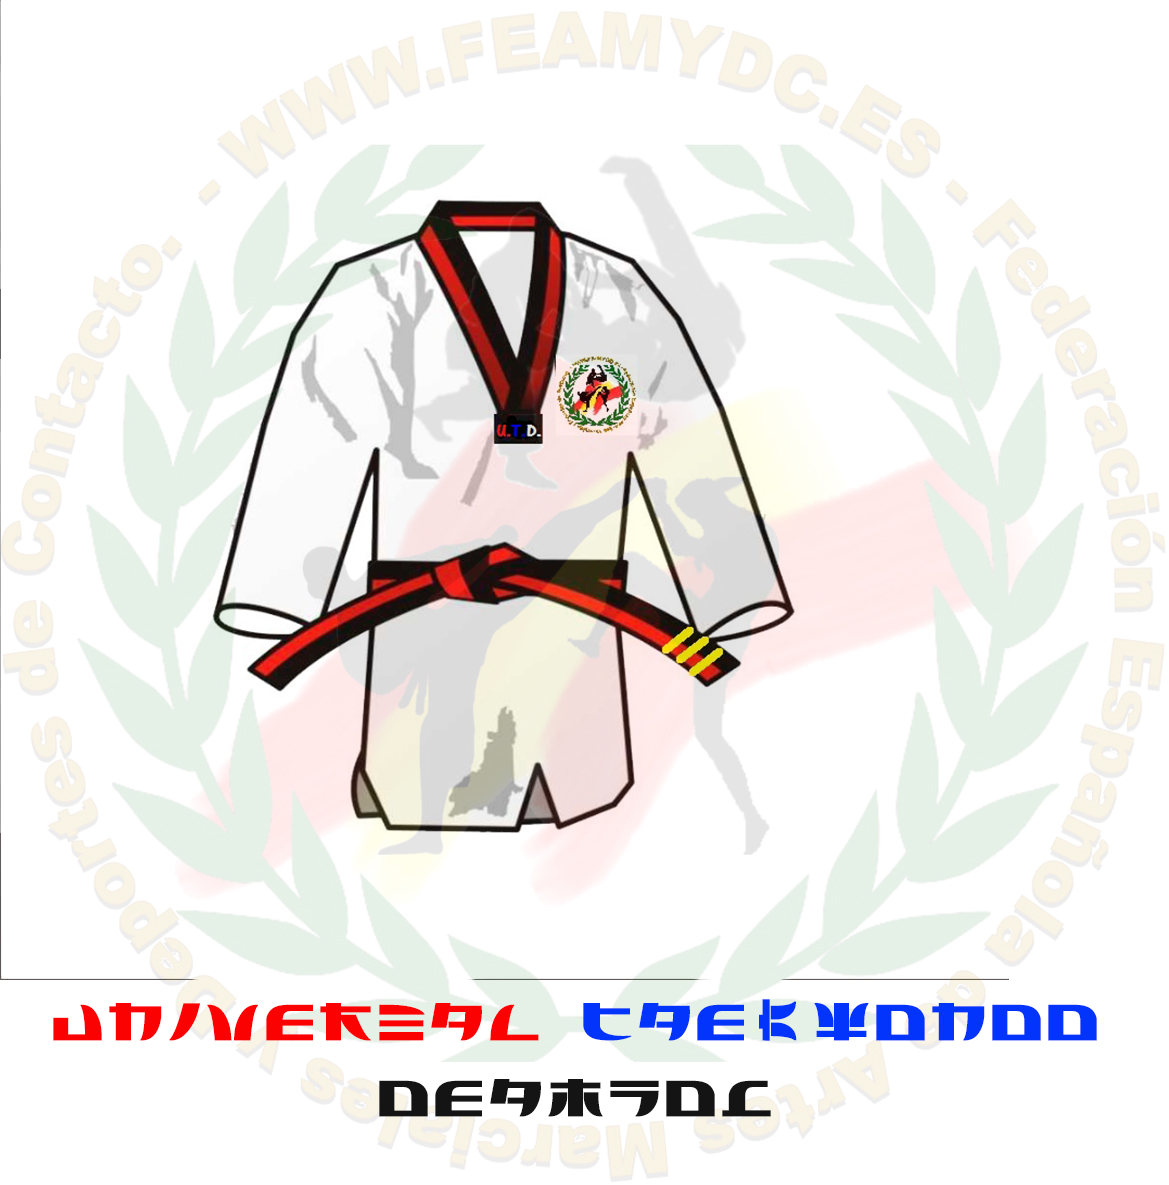 Grados y cinturones Universal Taekwon-do DEAMYDC (U.T.D.) – Federación  Española de Artes Marciales y Deportes de Contacto